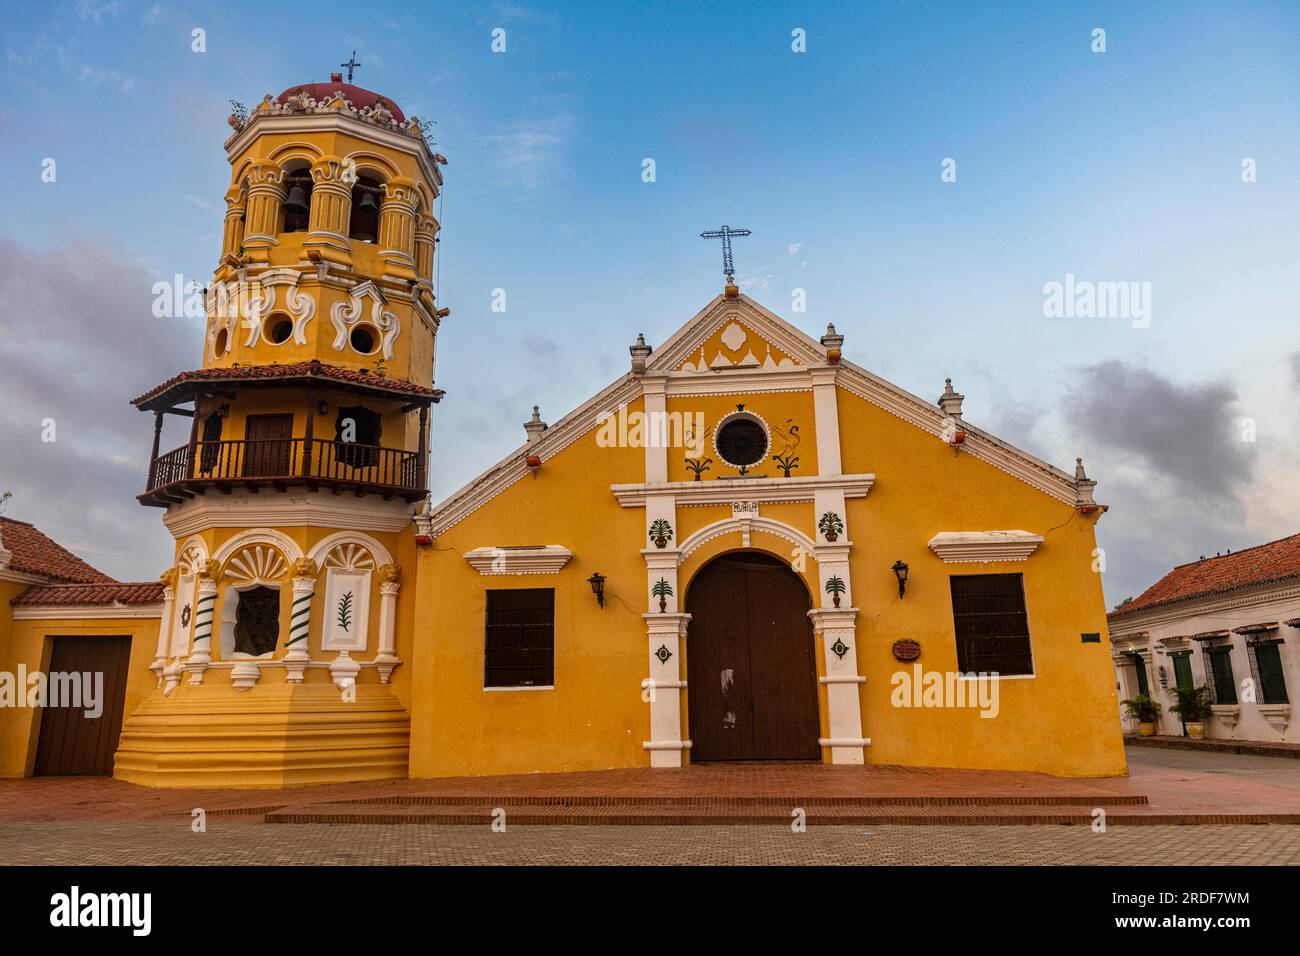 Iglesia de Santa Barbara, site du patrimoine mondial de l'UNESCO, Mompox, Colombie Banque D'Images